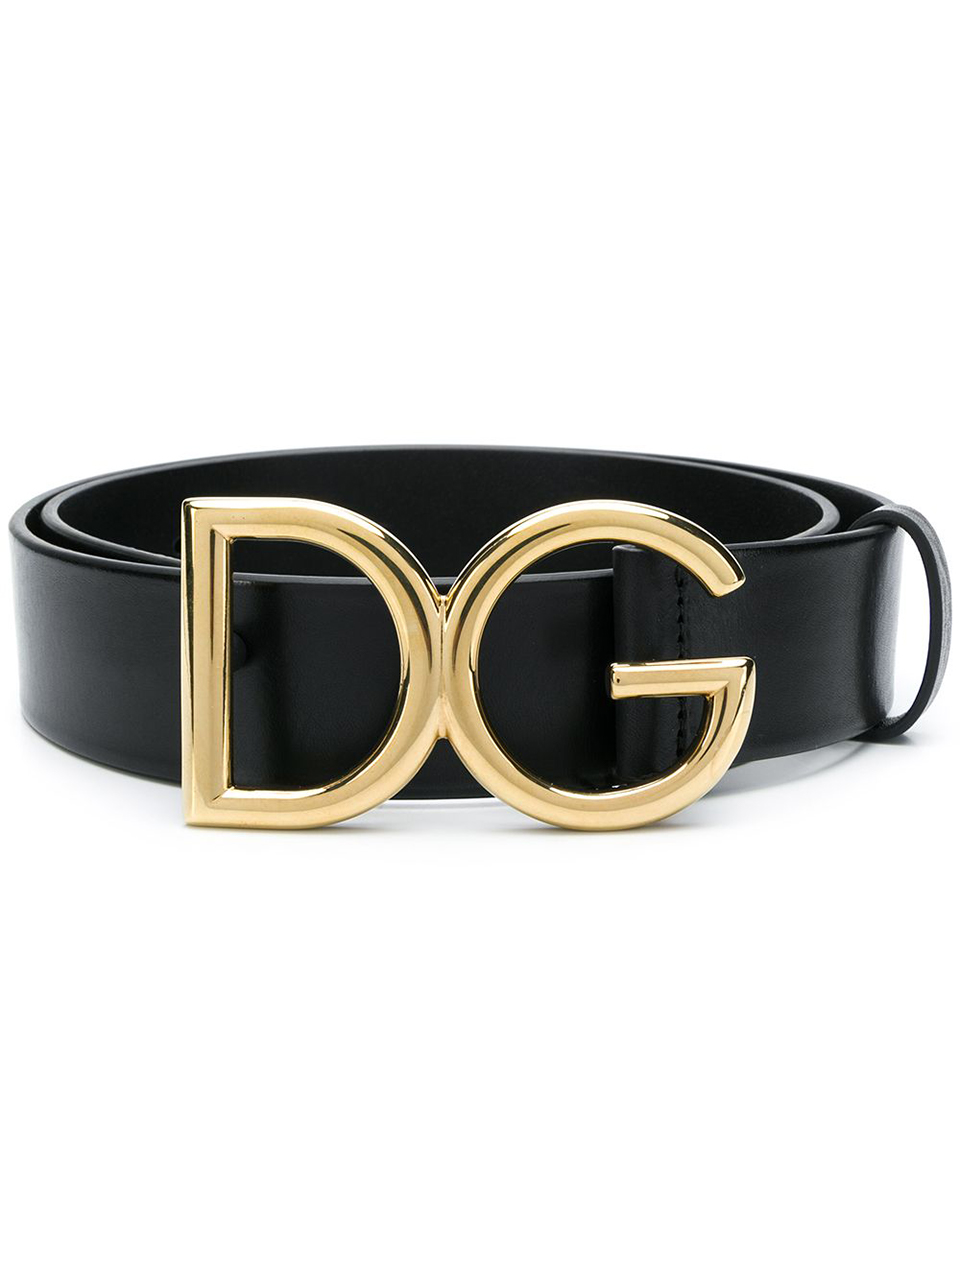 Imagem de: Cinto Dolce & Gabbana Preto Fivela com Logo Dourado